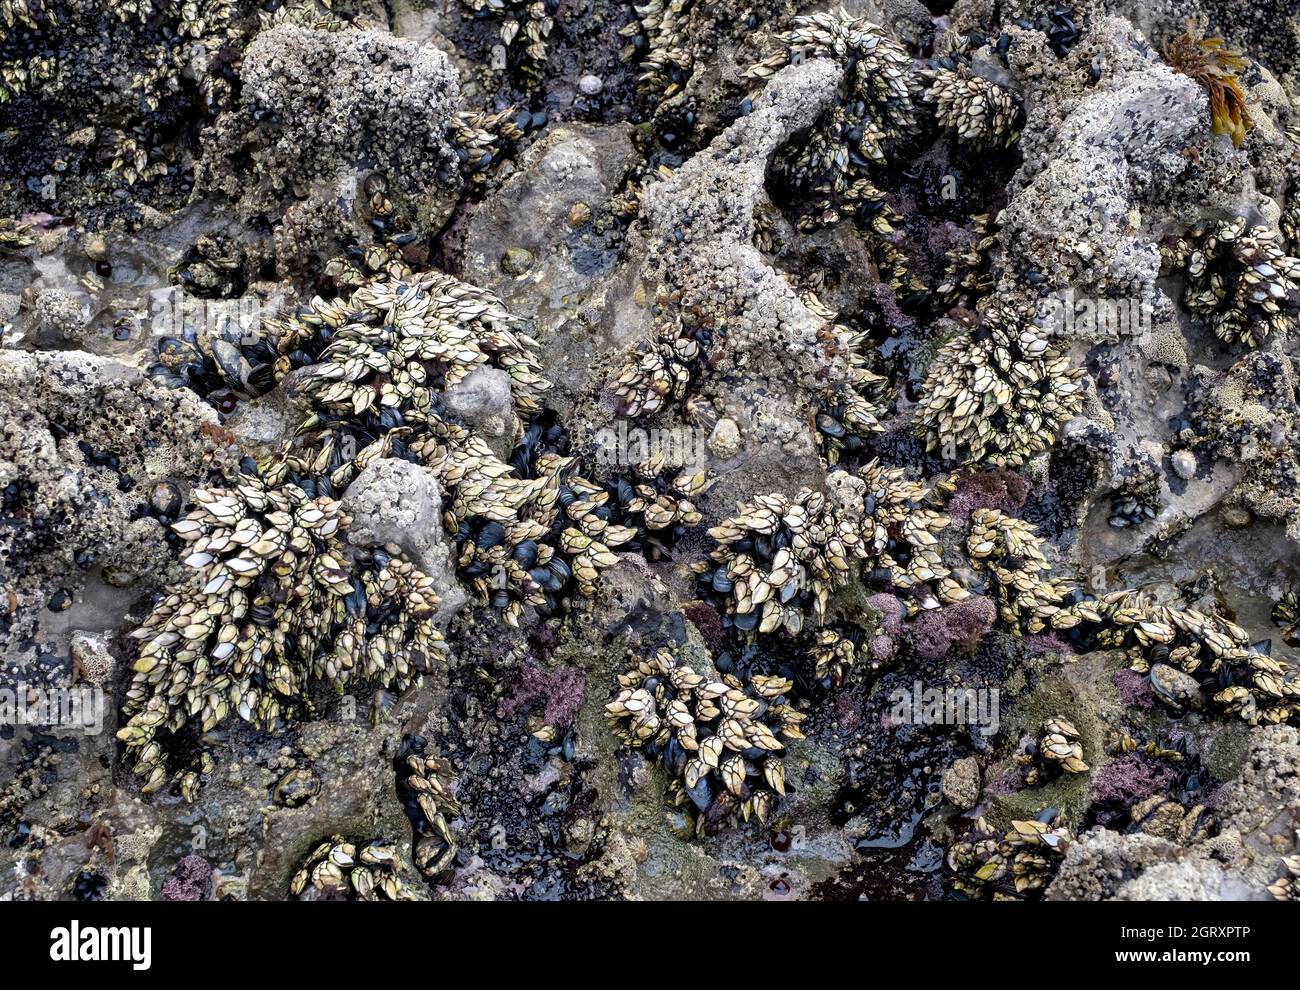 Meeresgestein voller Seepocken, Muscheln und anderer Weichtiere und Algen, Meeresgestein, horizontal Stockfoto